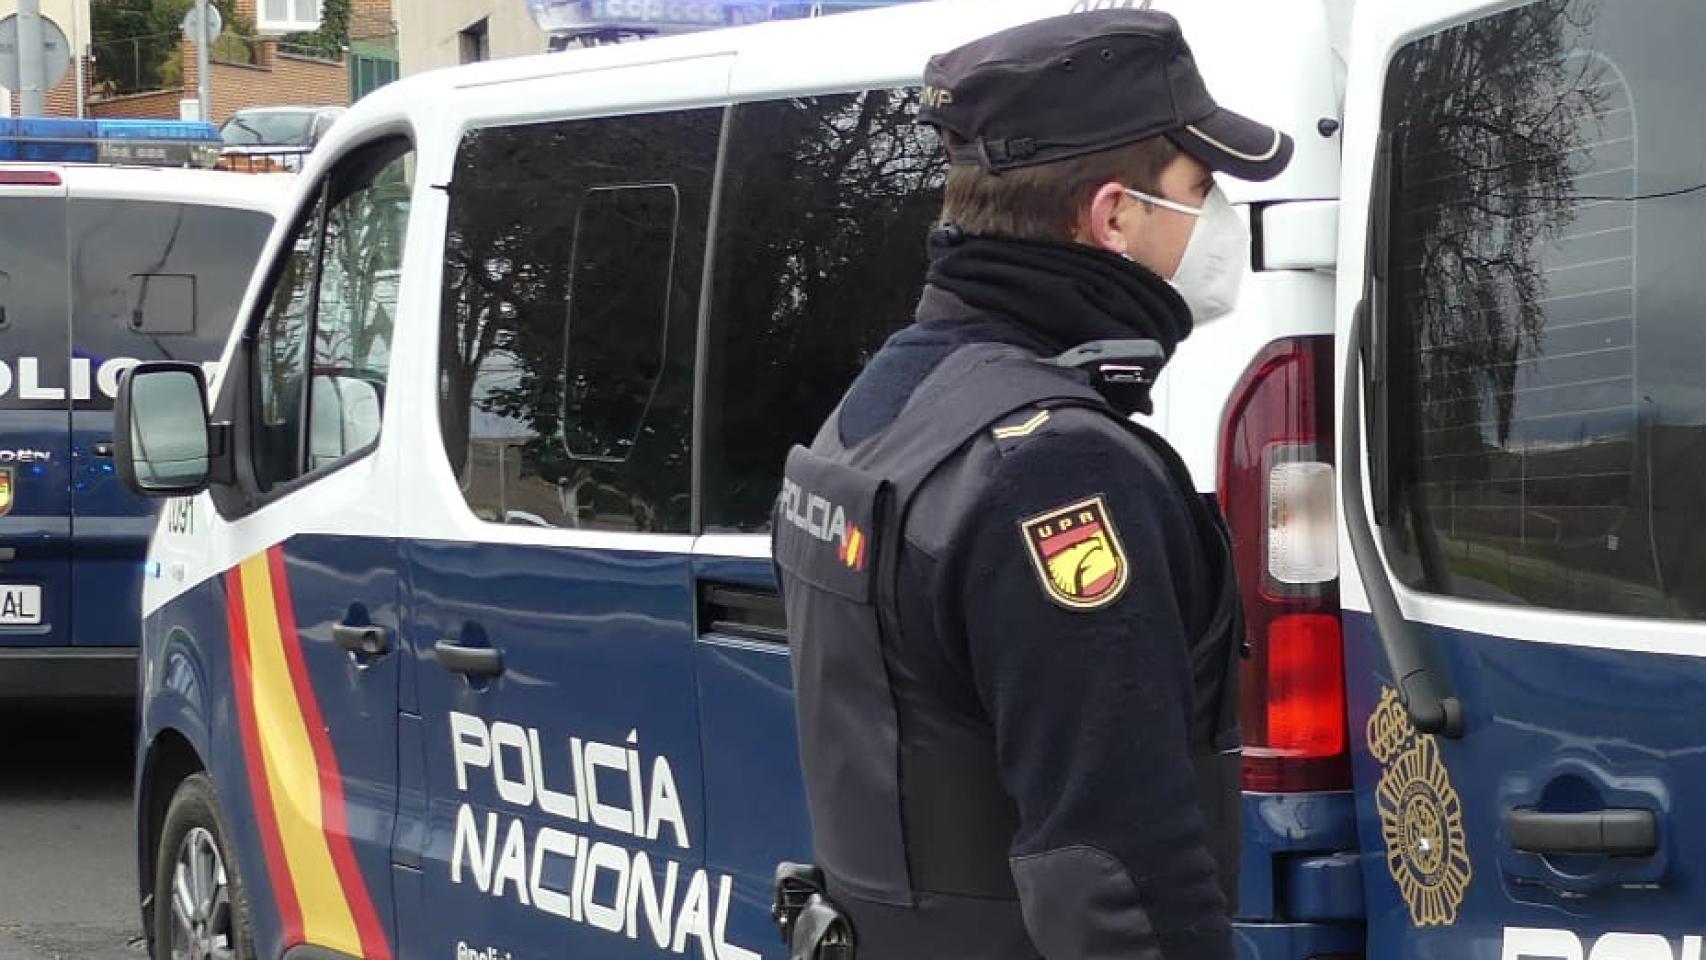 La Policía Nacional de Salamanca